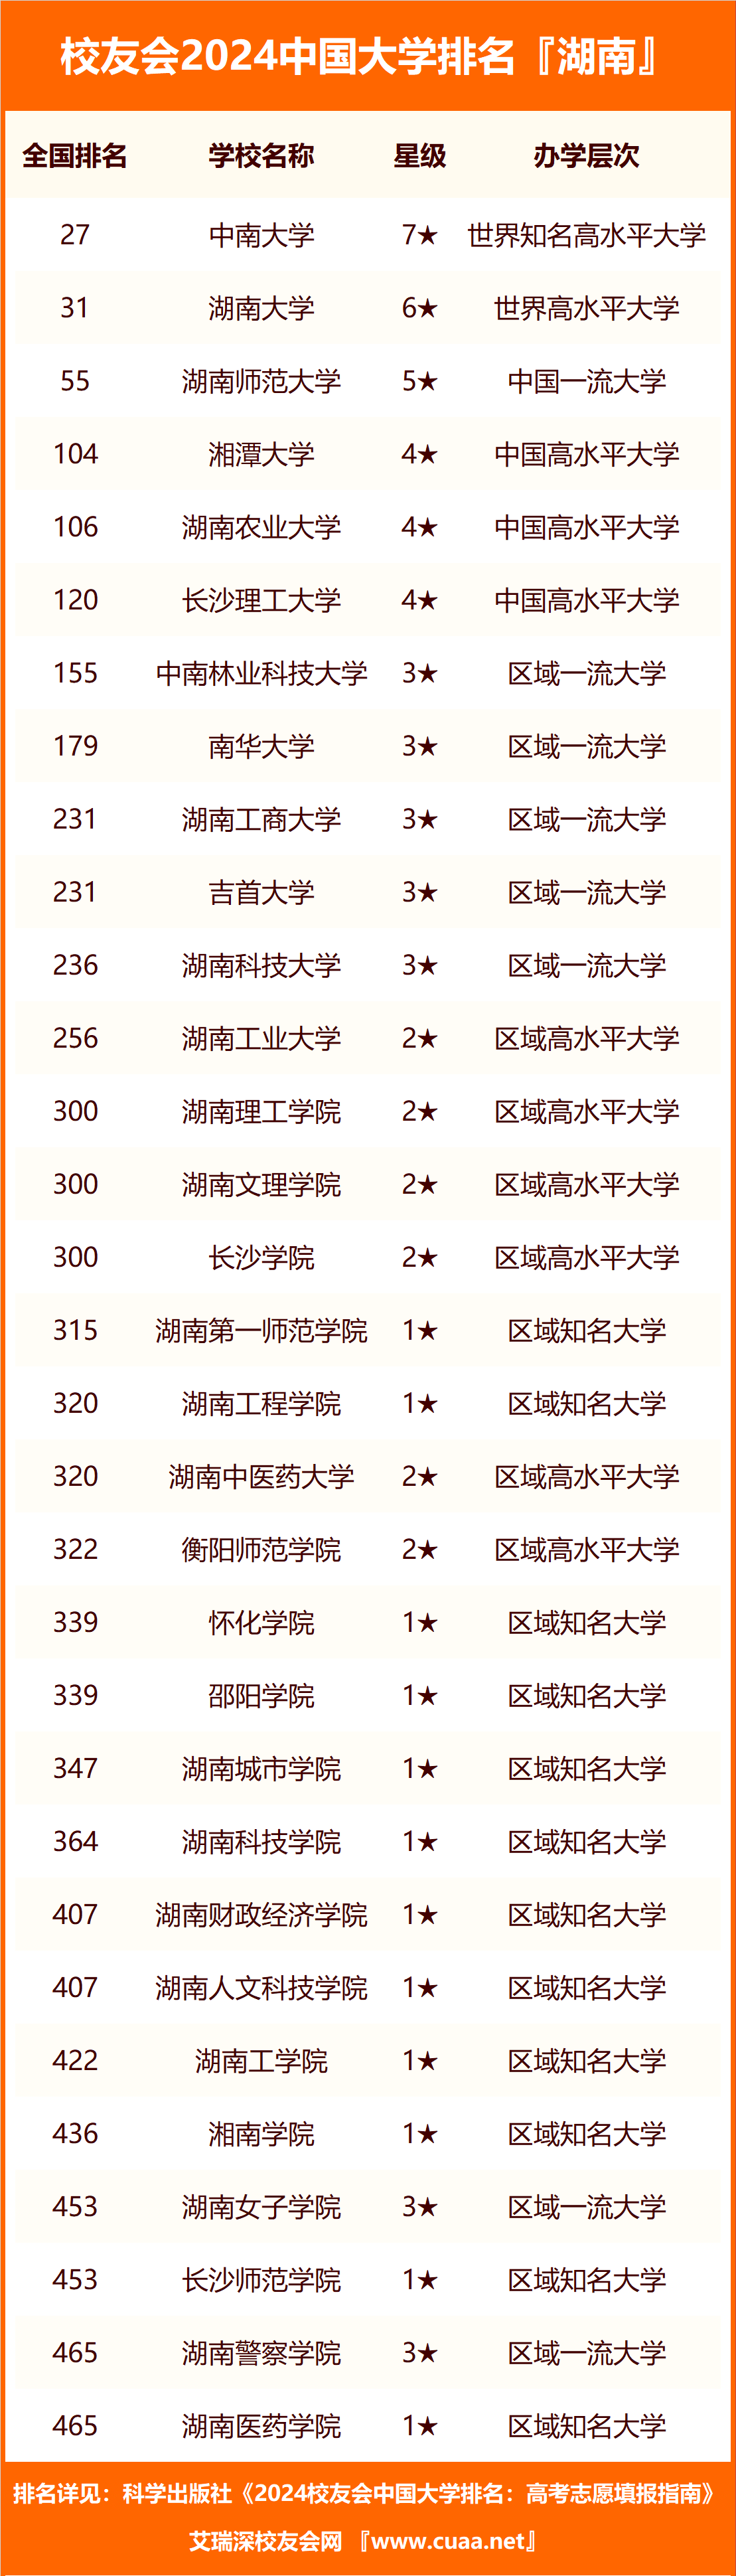 湘潭理工学院第四,2024年湖南省民办大学排名,湖南交通工程学院第五